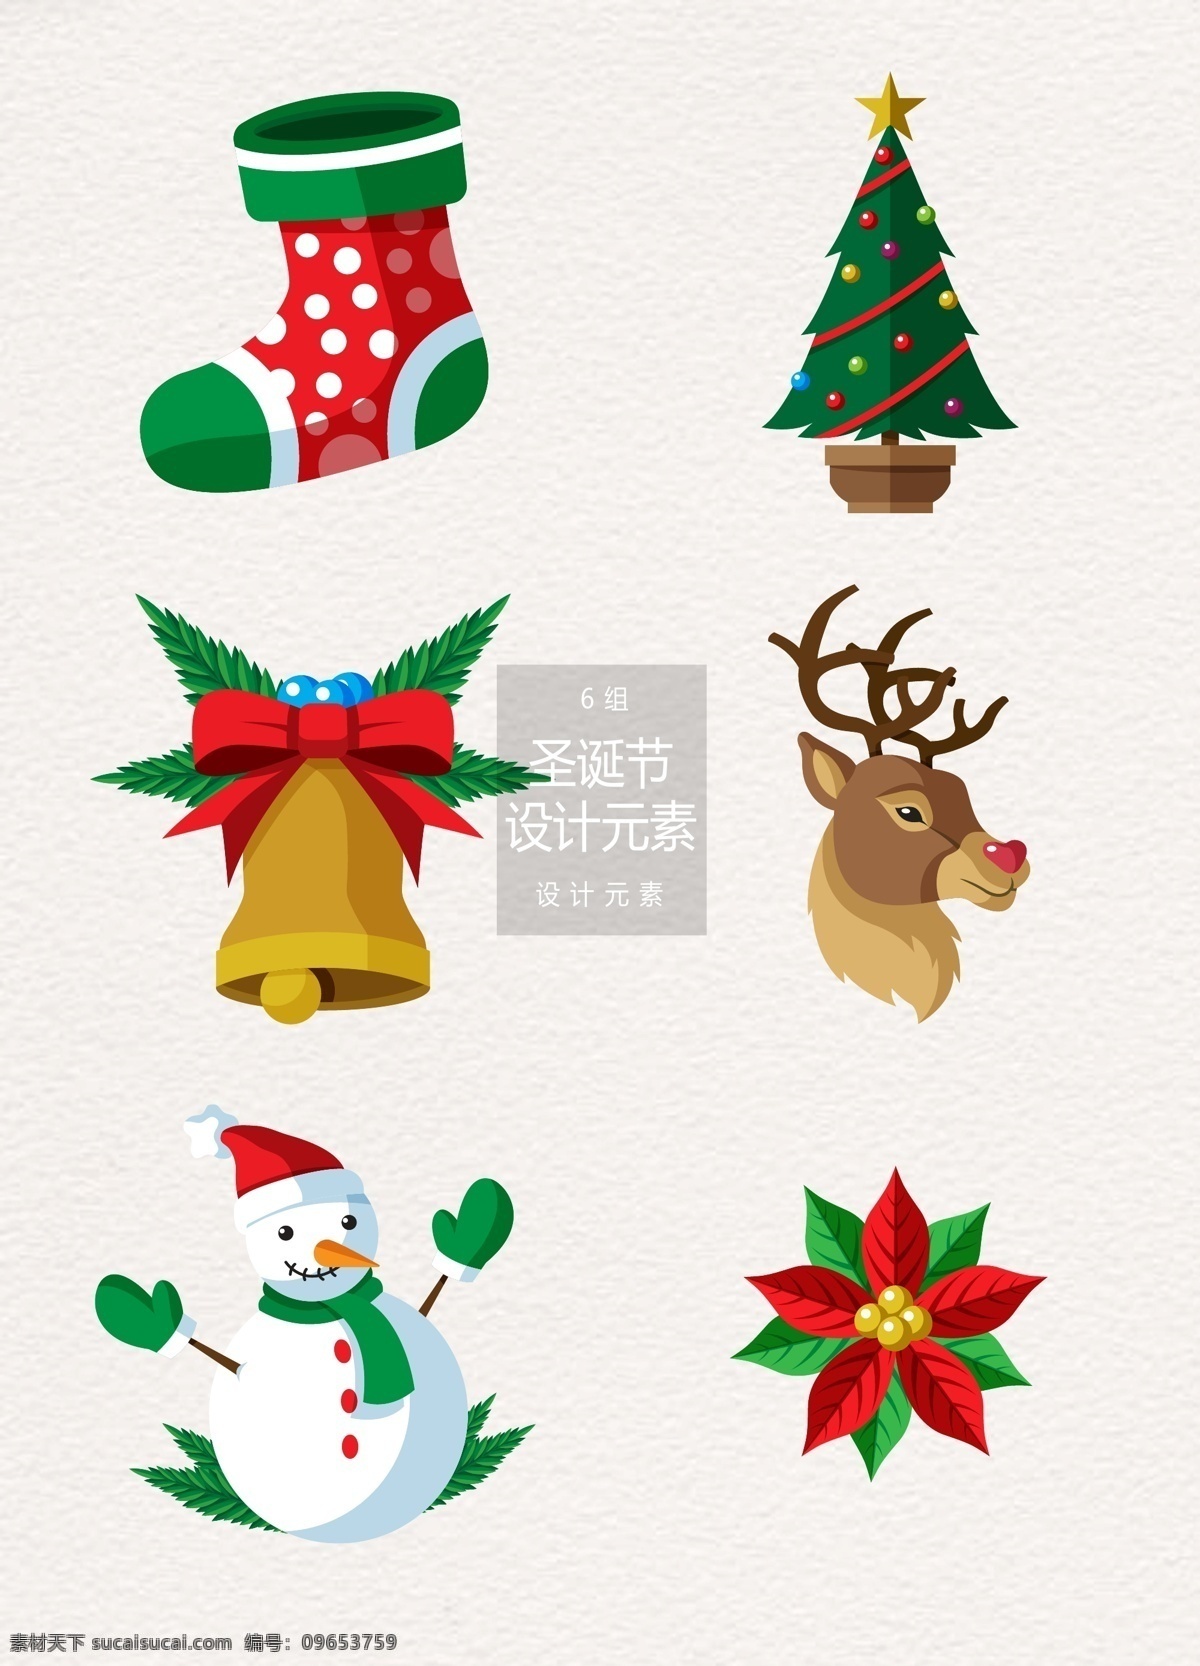 冬天 圣诞节 节日 装饰设计 元素 冬季 圣诞树 袜子 雪人 圣诞袜 驯鹿 麋鹿 铃铛 圣诞